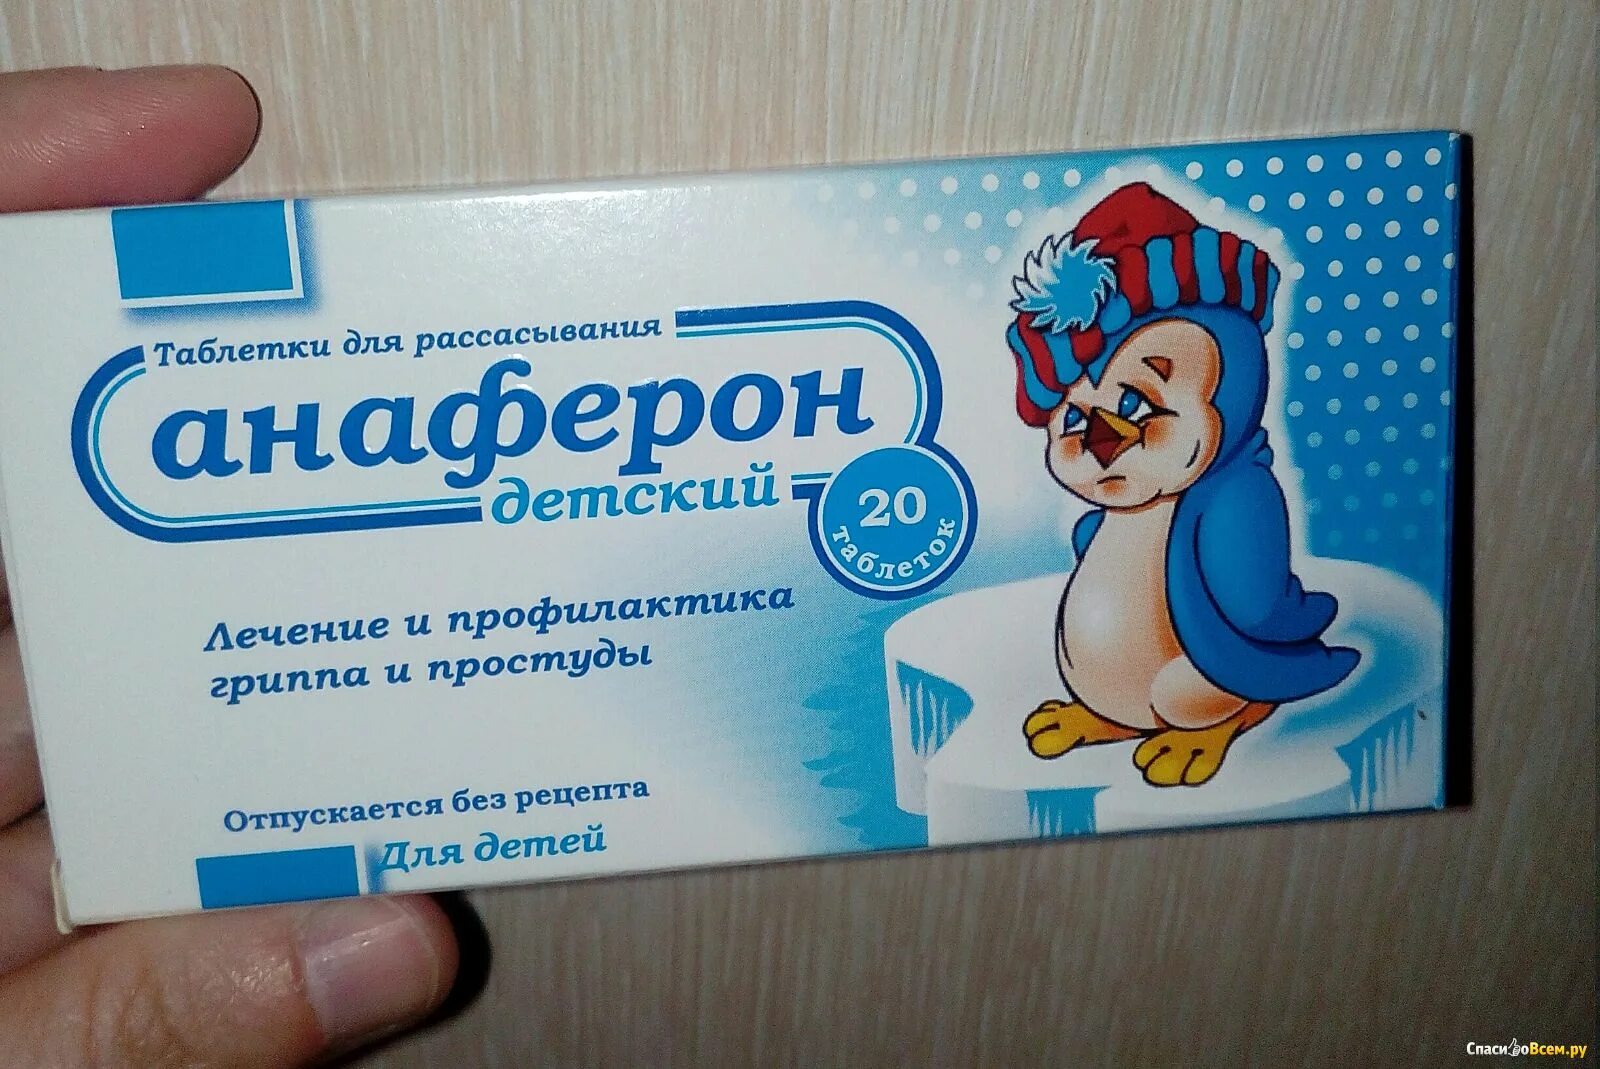 Таблетки с пингвином на упаковке